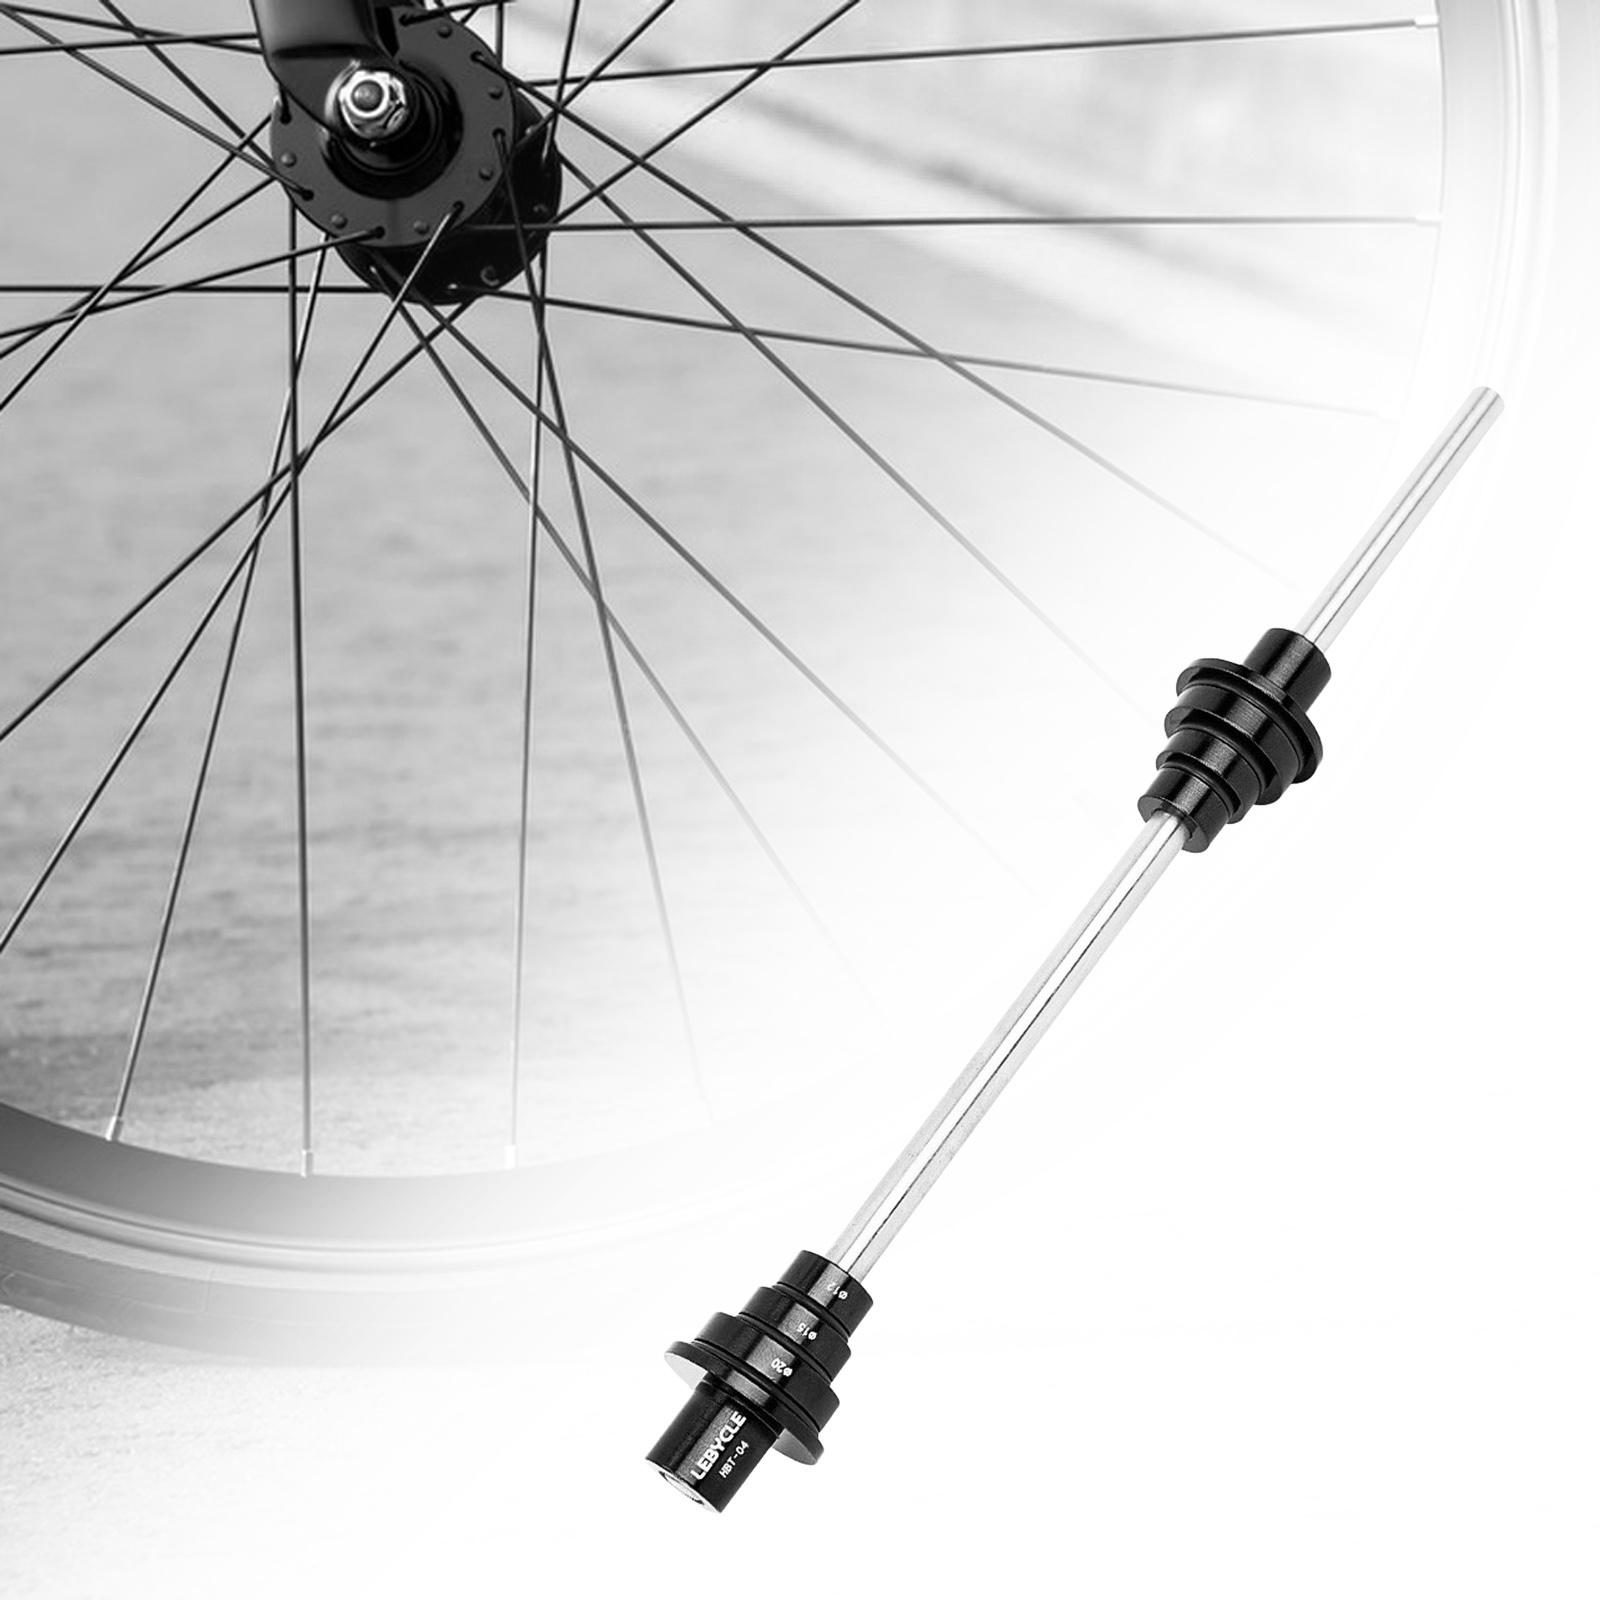 Bike Wheel Truing Stand thru Axle Adapter, Road Bike Training Accessories Truing